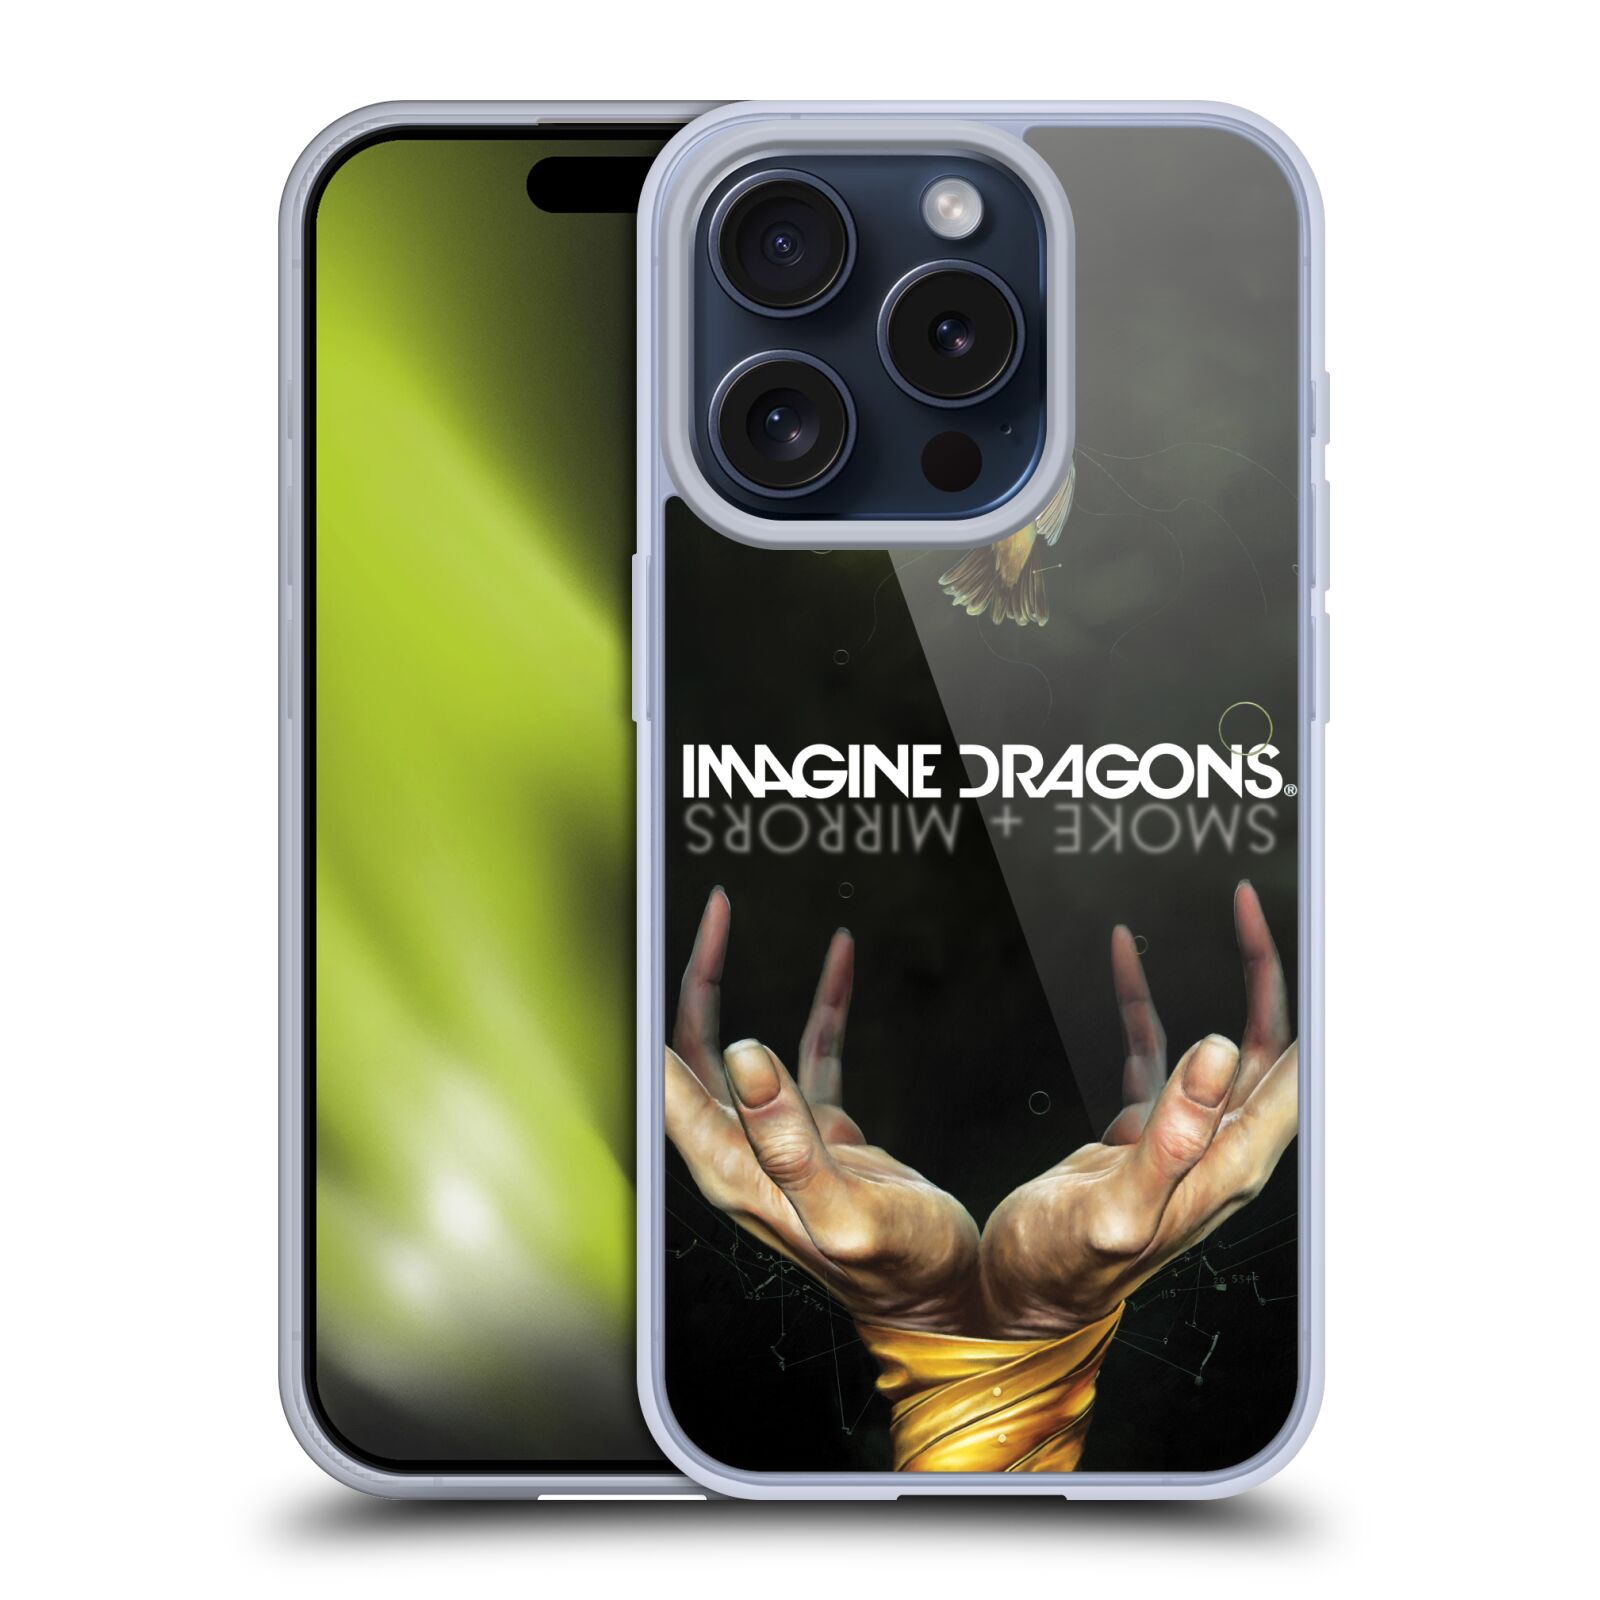 Silikonové lesklé pouzdro na mobil Apple iPhone 15 Pro - Imagine Dragons - Smoke And Mirrors (Silikonový lesklý kryt, obal, pouzdro na mobilní telefon Apple iPhone 15 Pro s licencovaným motivem Imagine Dragons - Smoke And Mirrors)